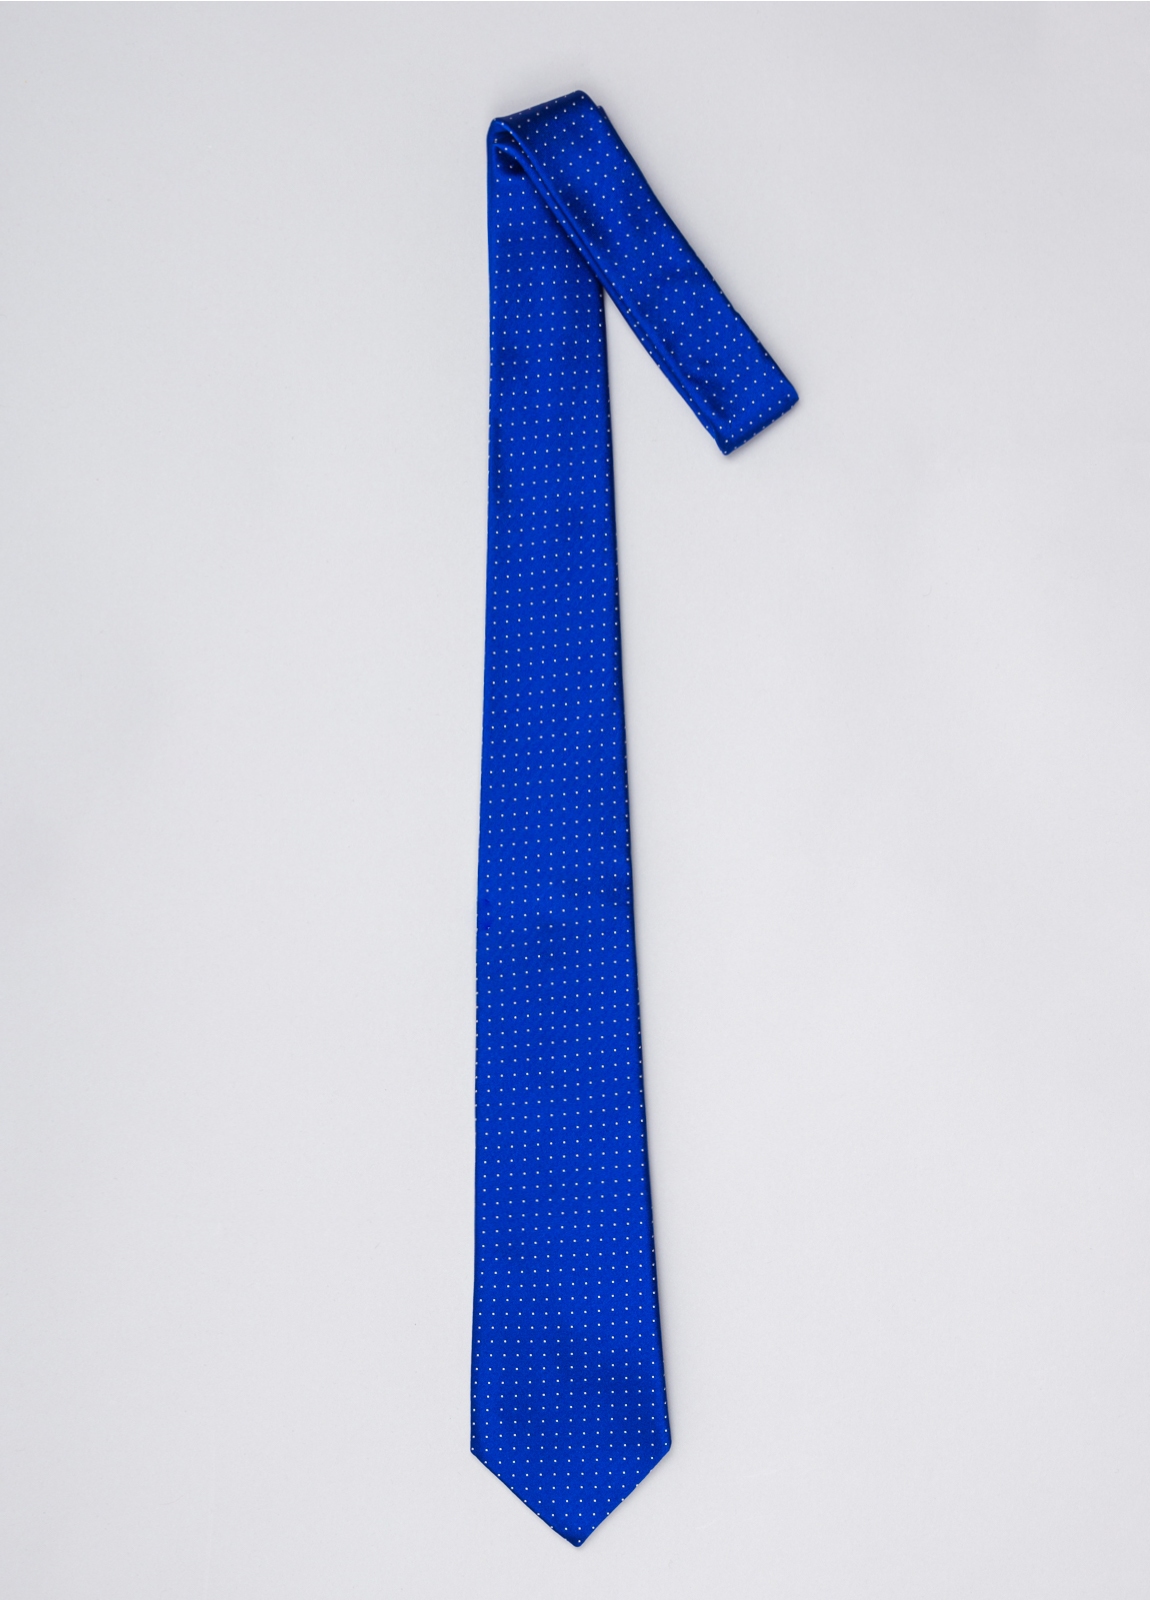 Corbata FUREST COLECCIÓN color azulón con micro topito - Ítem1